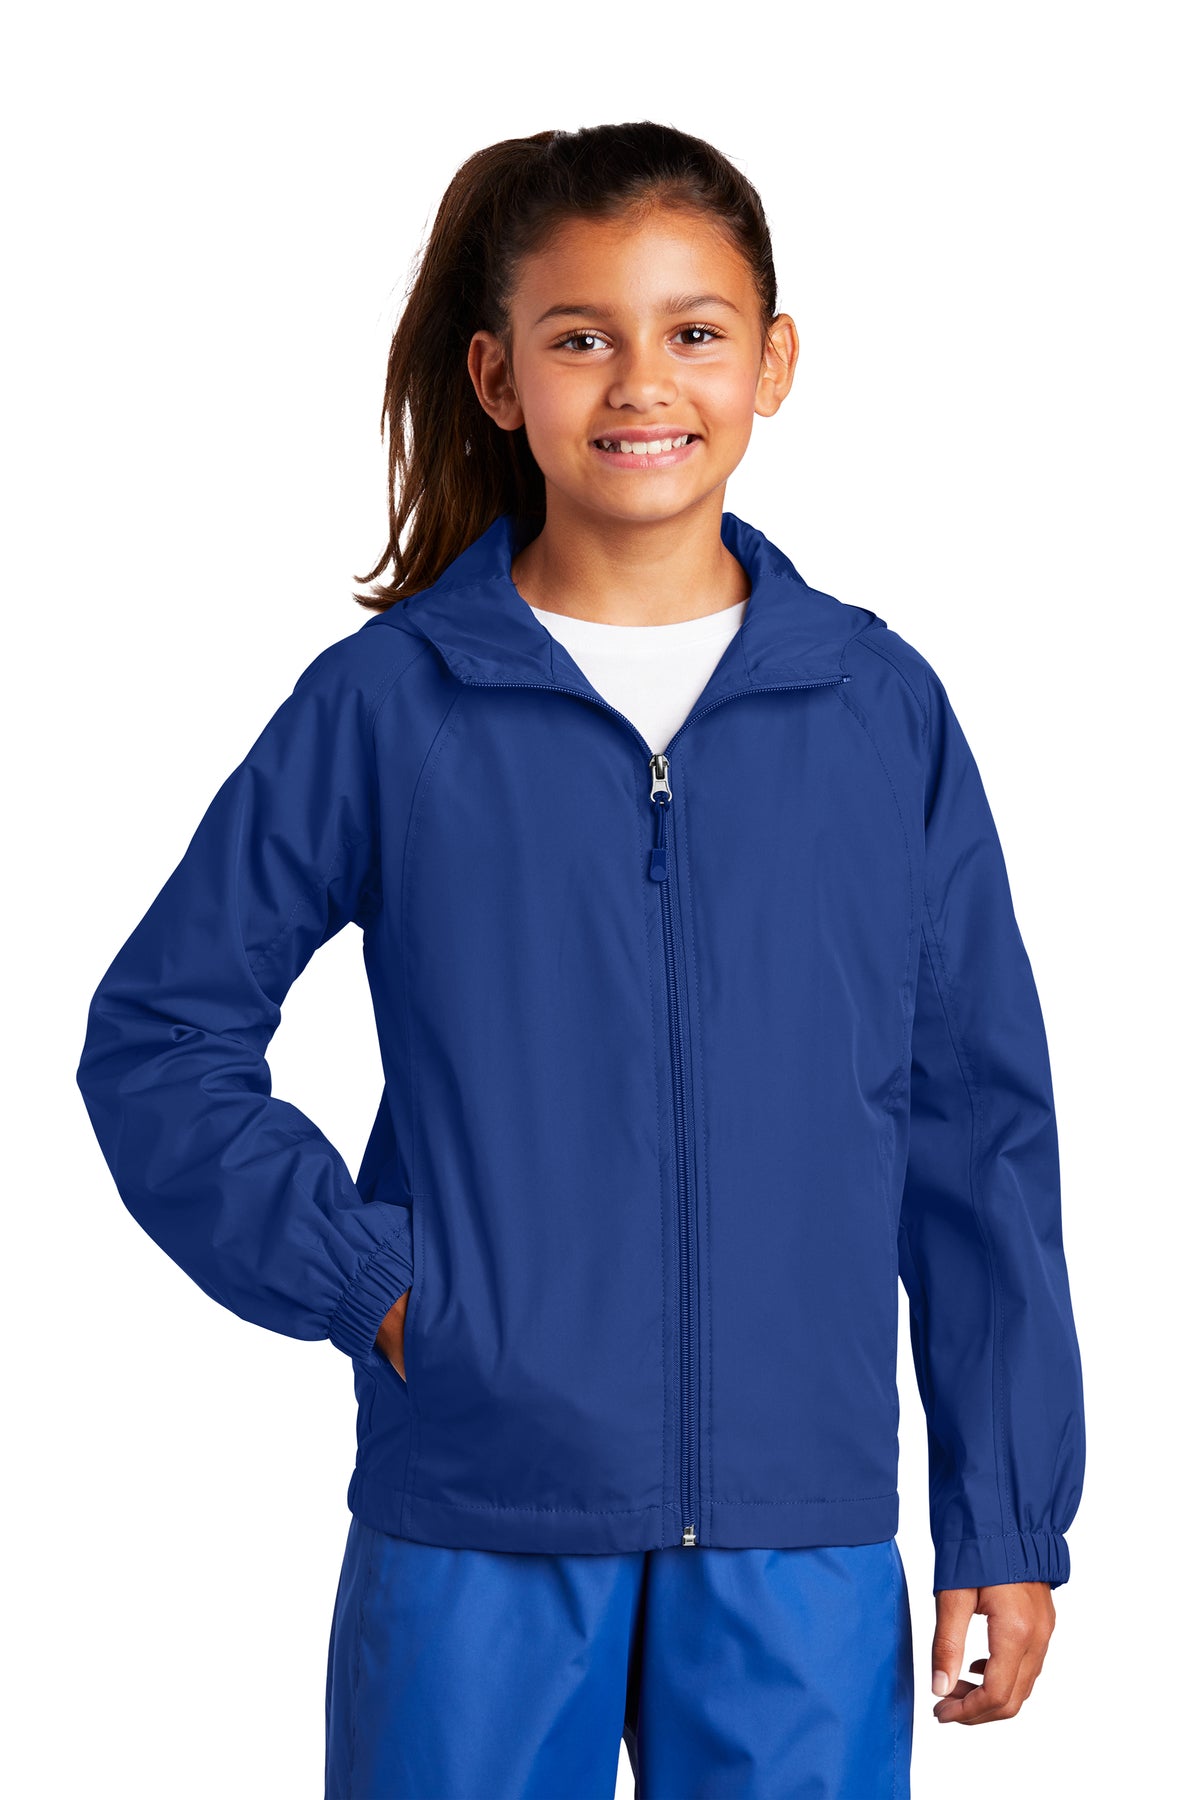 Campbell-Savona JST73 Sport-Tek Hooded Raglan jacket Adult or Youth